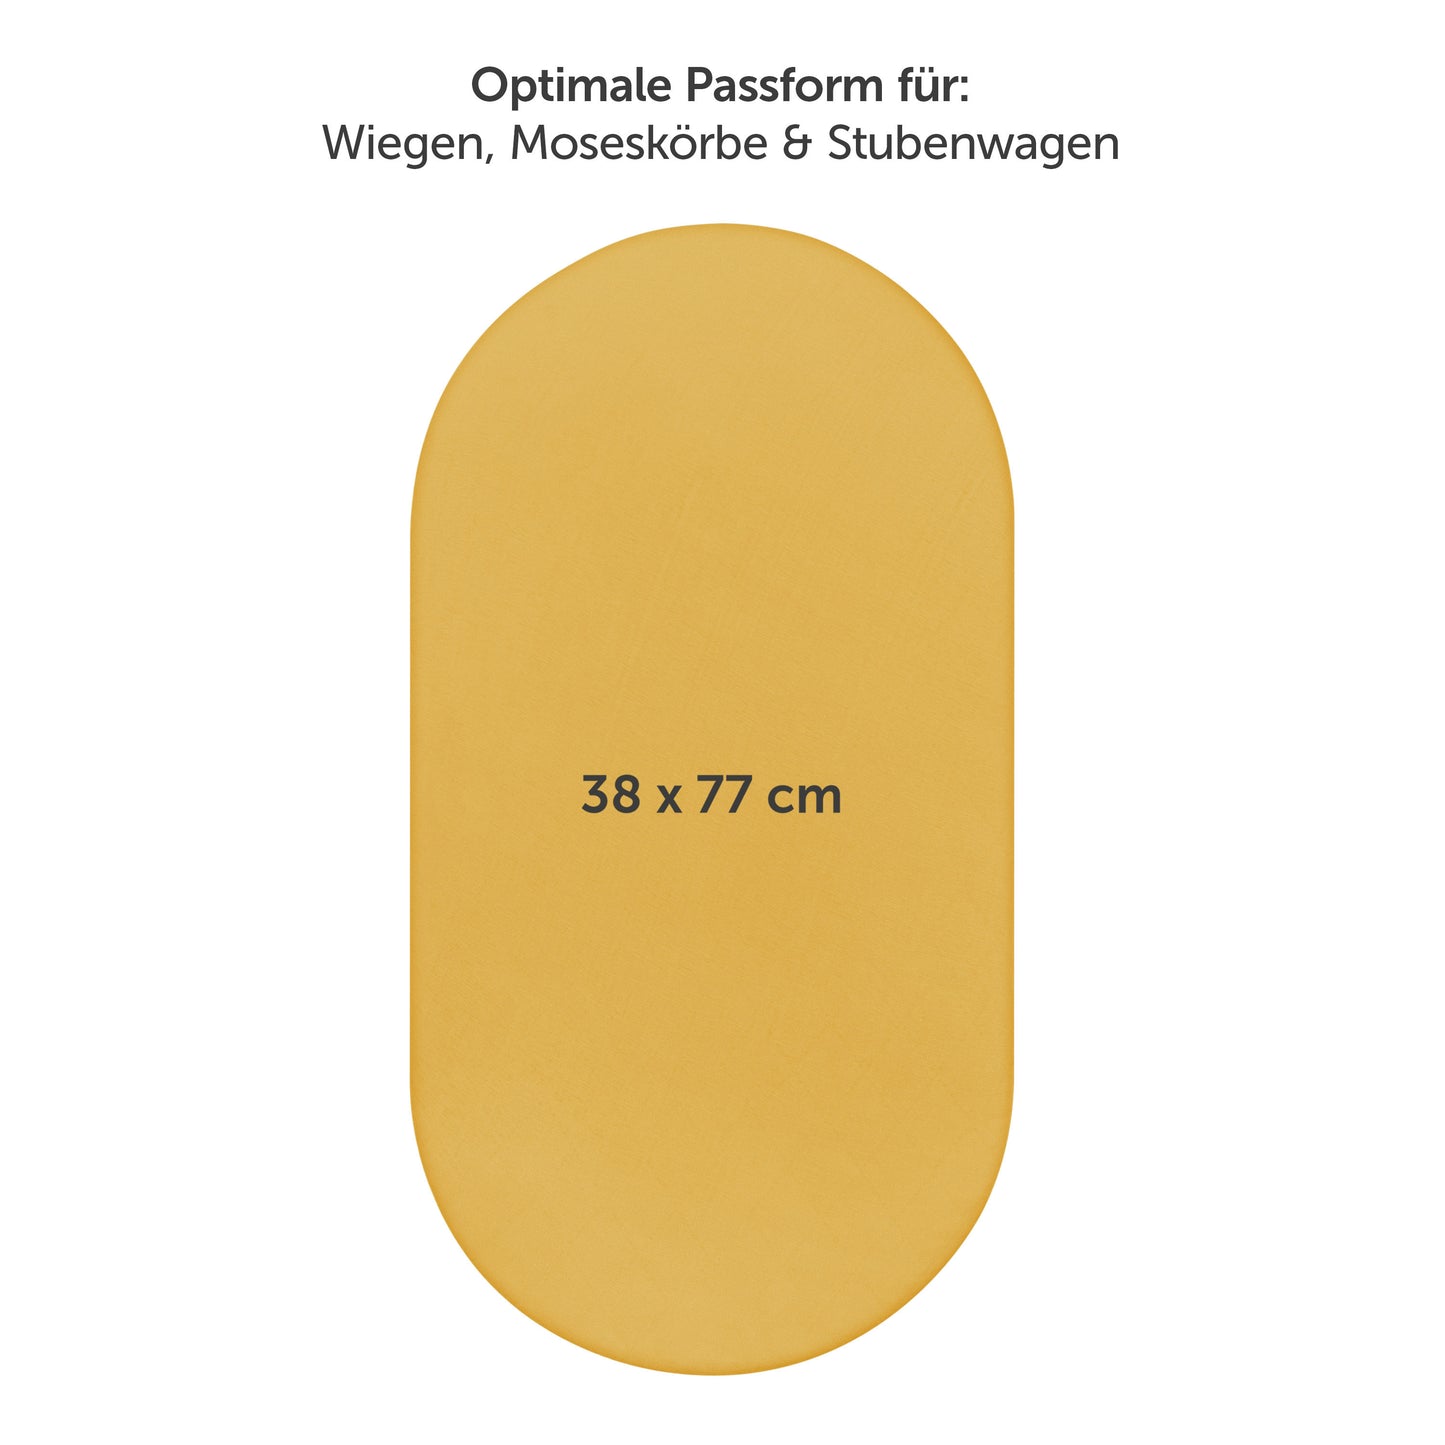 Produktverpackung für Premium Spannbetttücher in gelb Farben mit Öko-Tex Standard 100 Siegel.